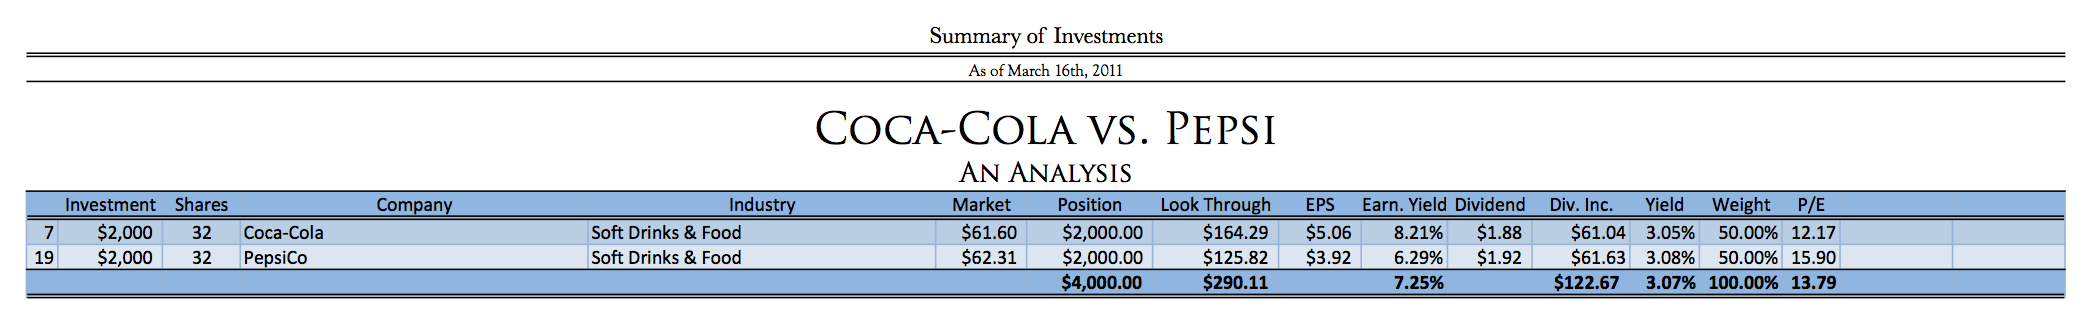 Coca-Cola versus Pepsi Stock